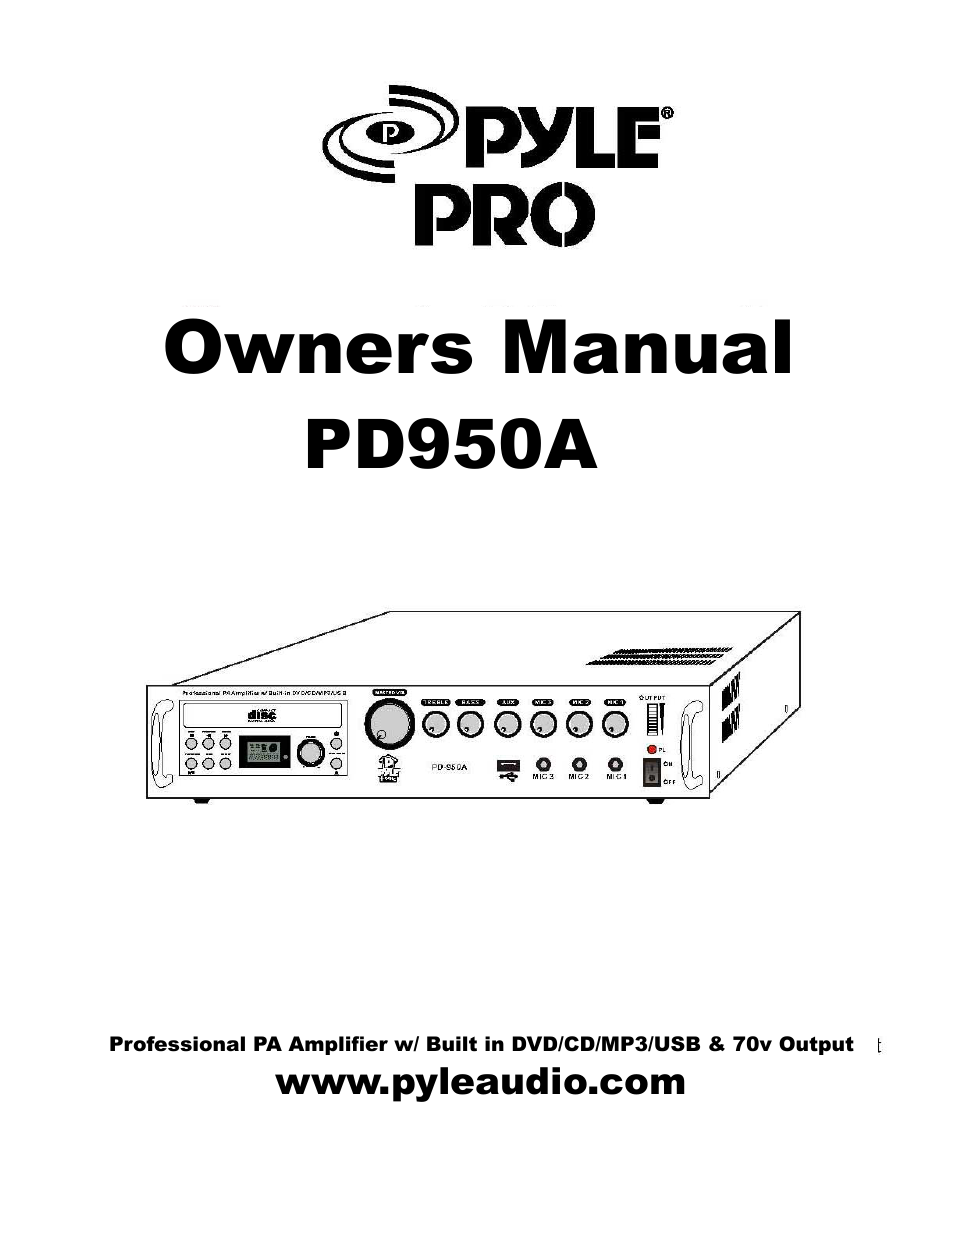 PD950A